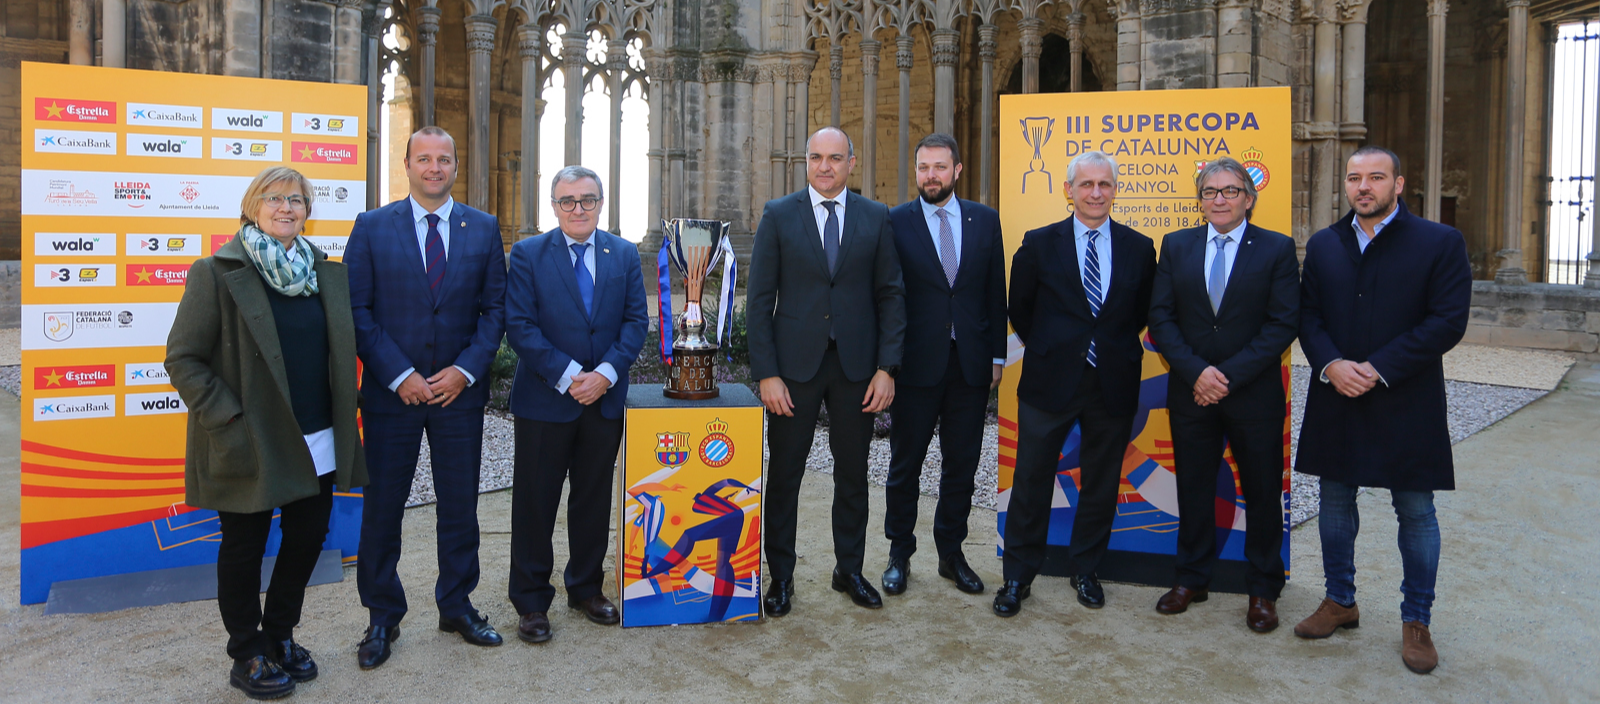 La Supercopa de Catalunya es presenta a la Seu Vella